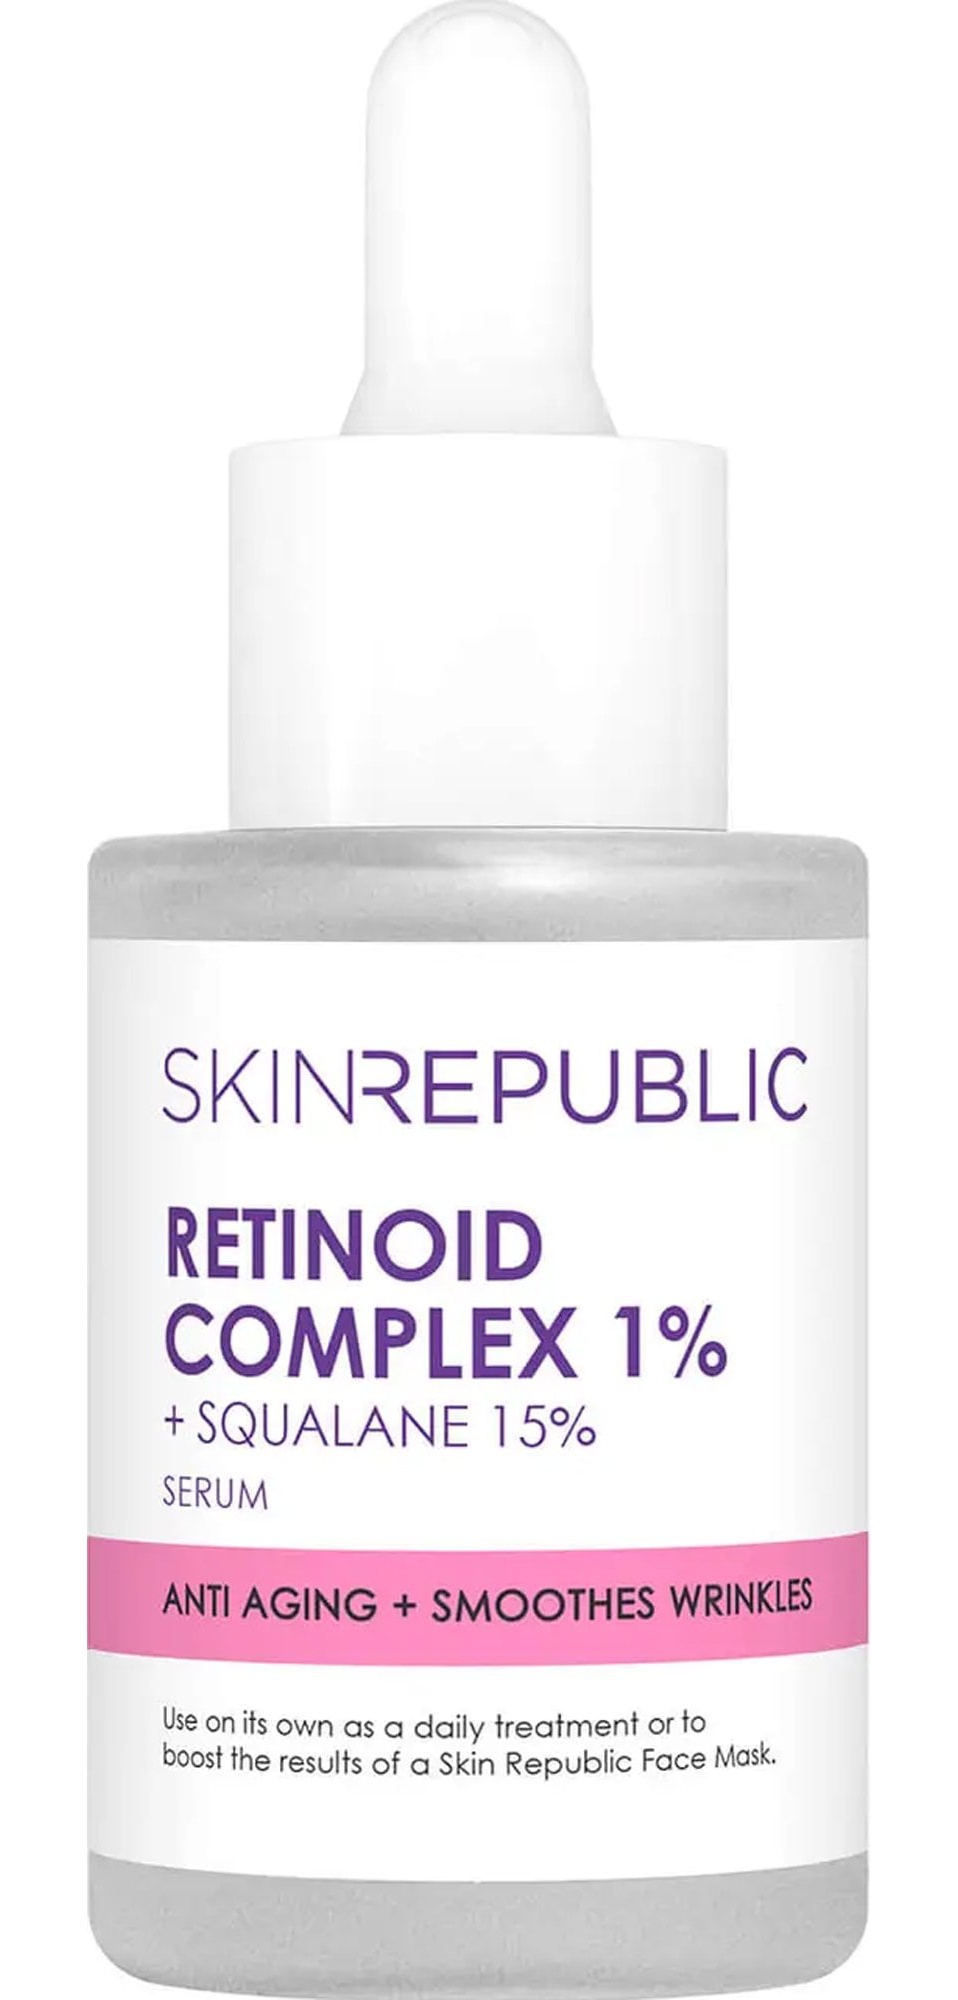 Skin Republic Retinoid Complex 1% Serum